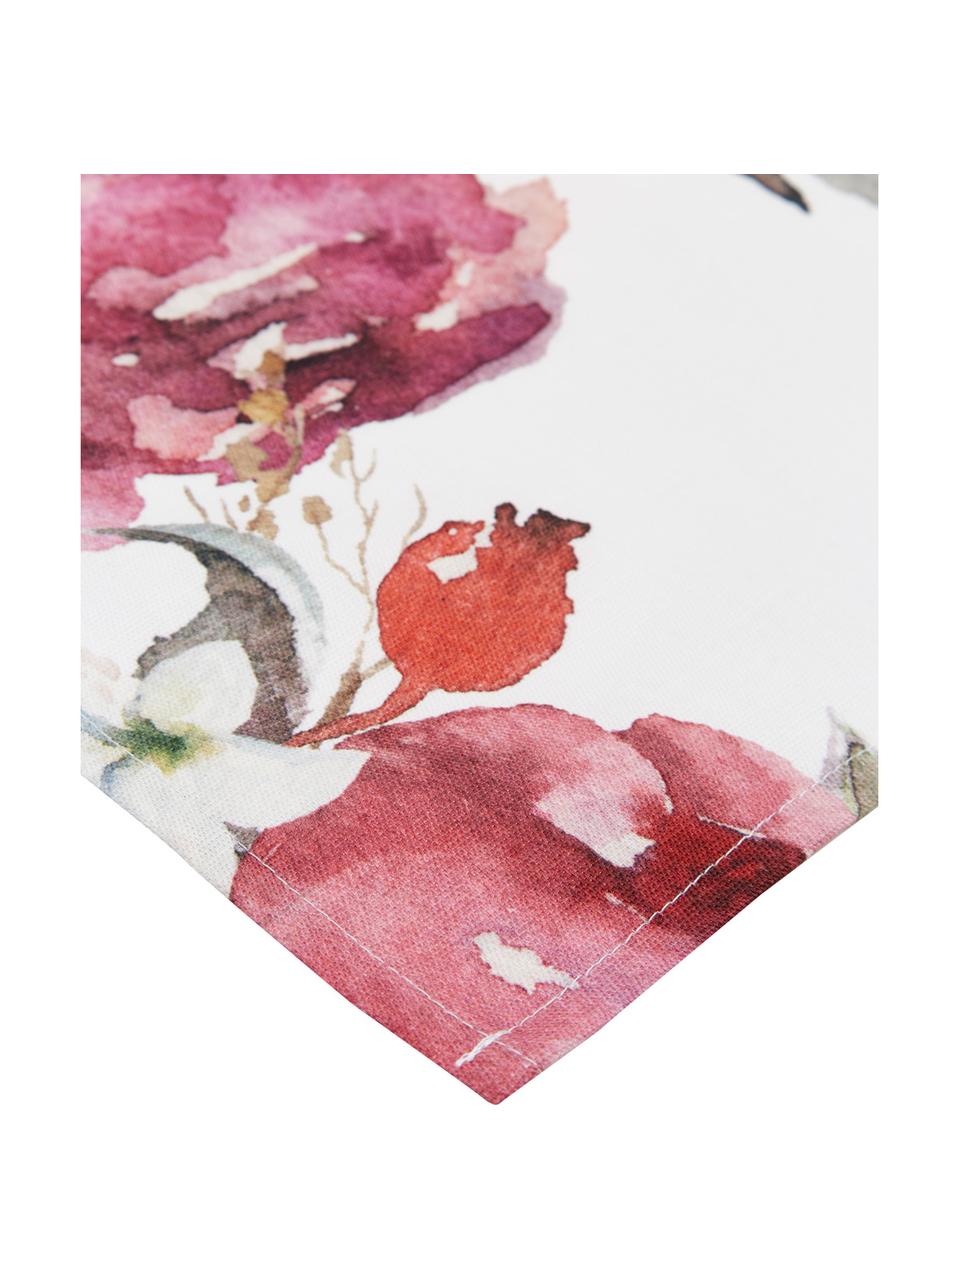 Bieżnik z bawełny Florisia, Bawełna, Blady różowy, biały, lila, zielony, S 50 x D 160 cm